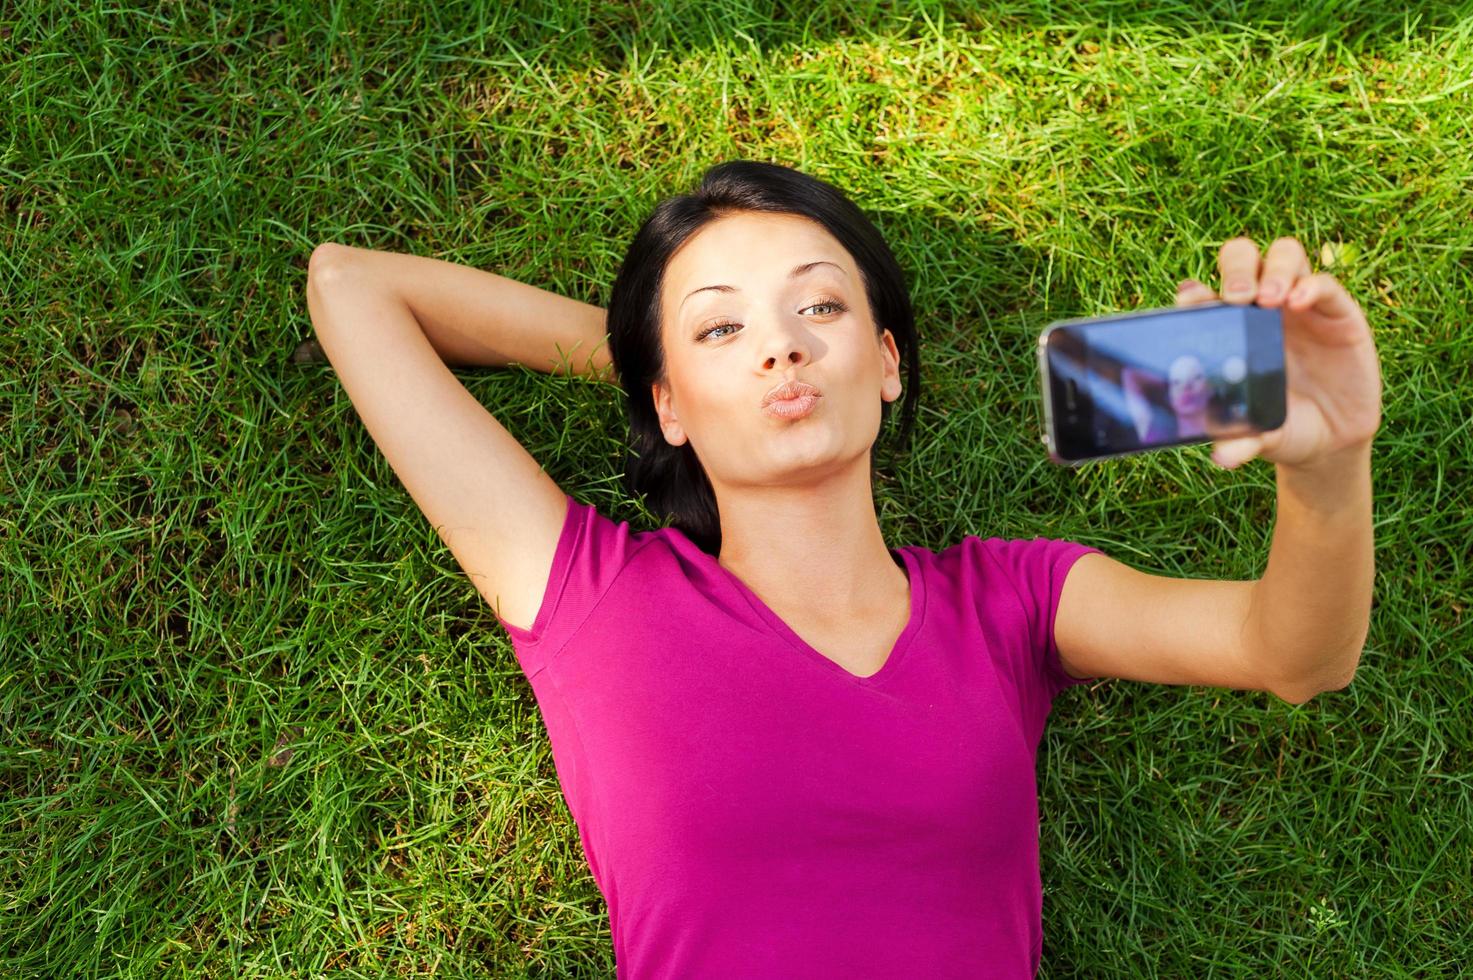 frau, die selfie macht. Blick von oben auf die schöne junge Frau, die mit ihrem Smartphone ein Selfie macht, während sie im grünen Gras liegt foto